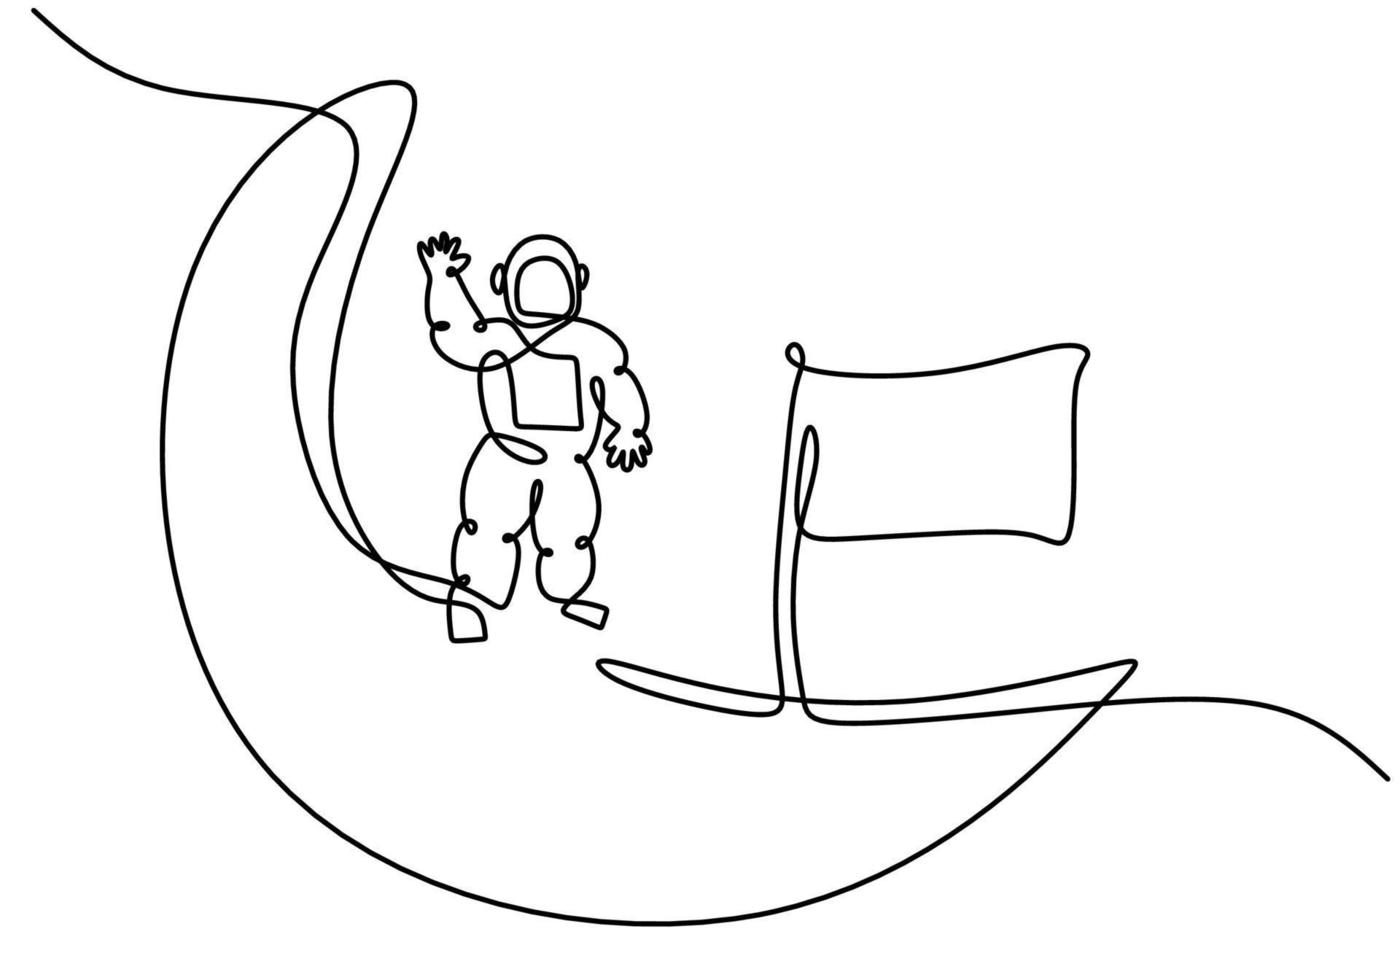 mão desenhando 1 solteiro contínuo linha do astronauta em lua vetor